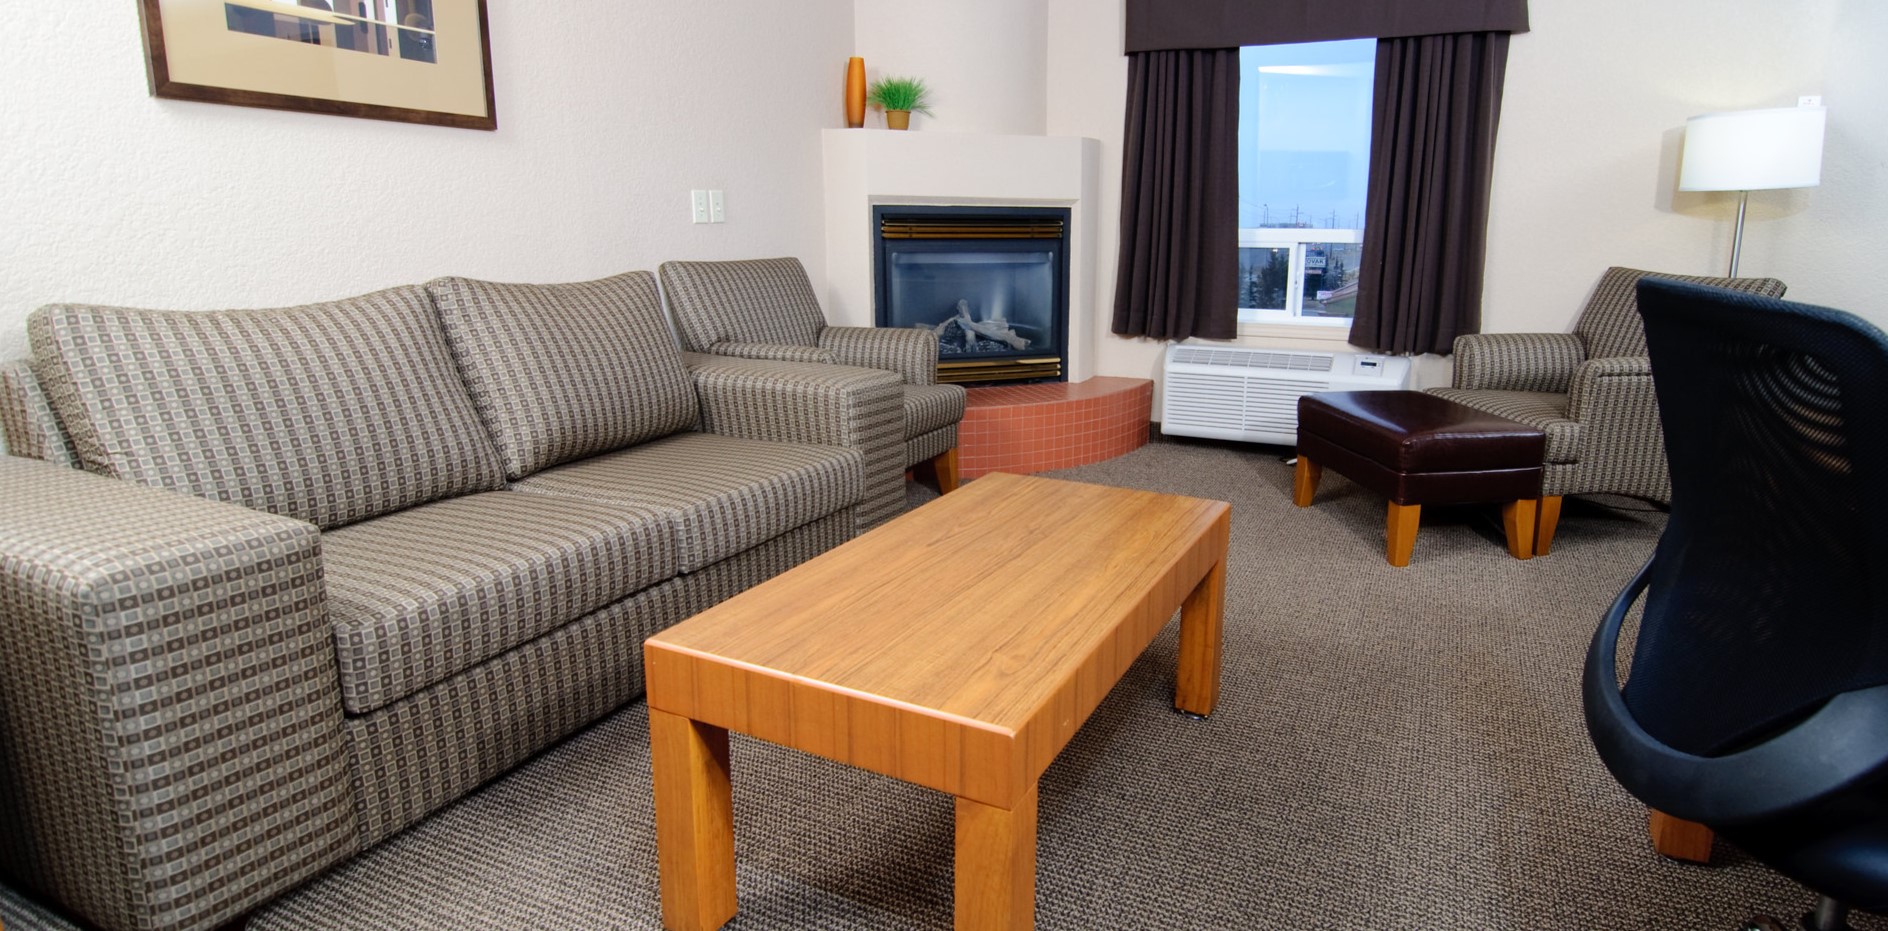 Обивка дивана с геометрическим принтом идеально подойдет для офиса